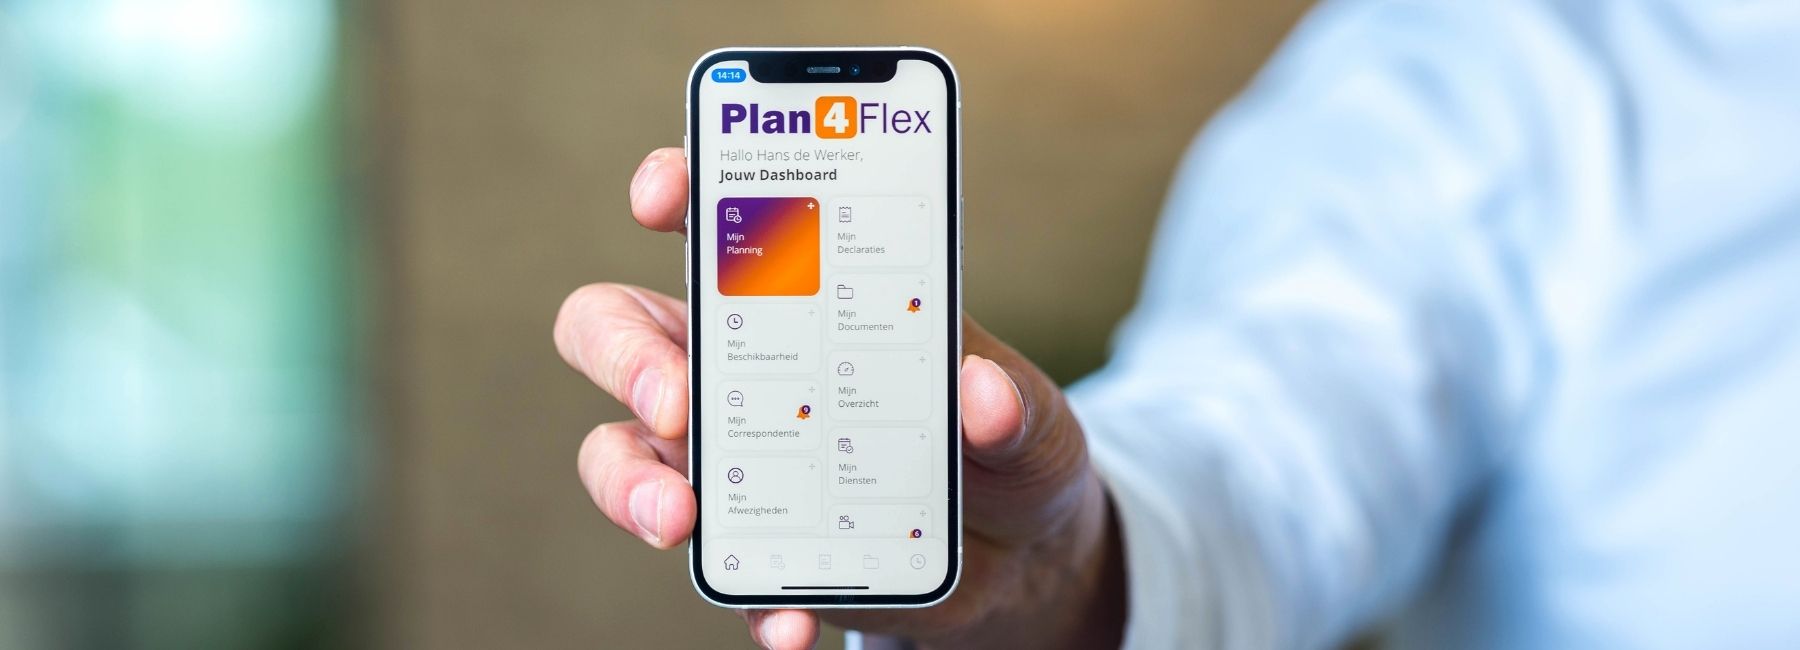 Nieuwe functionaliteit in de Plan4Flex App: afwezigheidsmeldingen